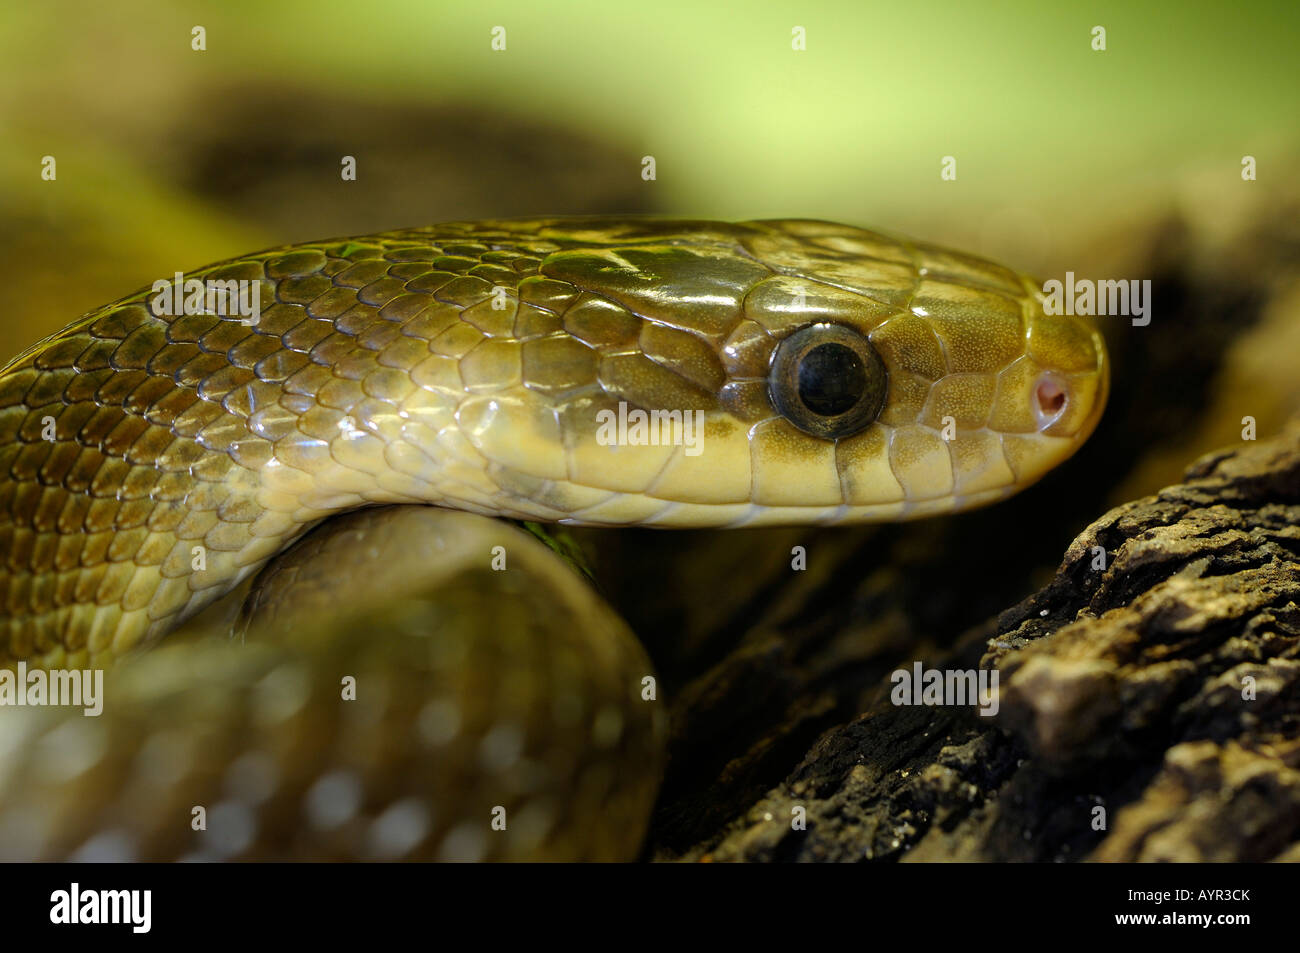 Aesculapian Snake (Elaphe longissima, Zamenis longissimus) Stock Photo